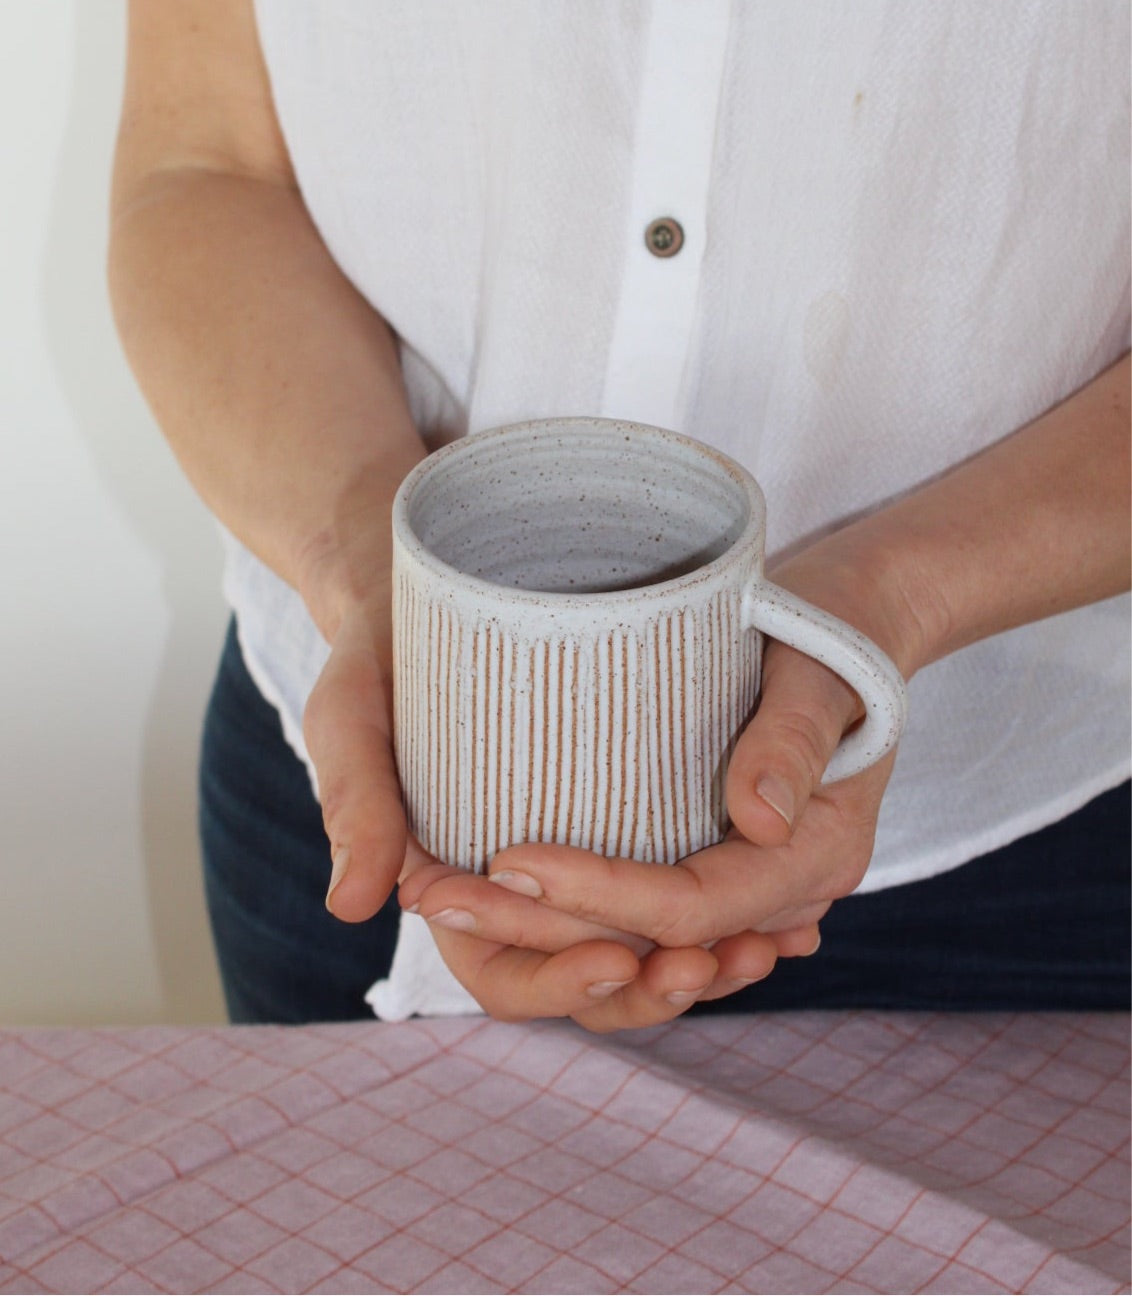 White textured mug